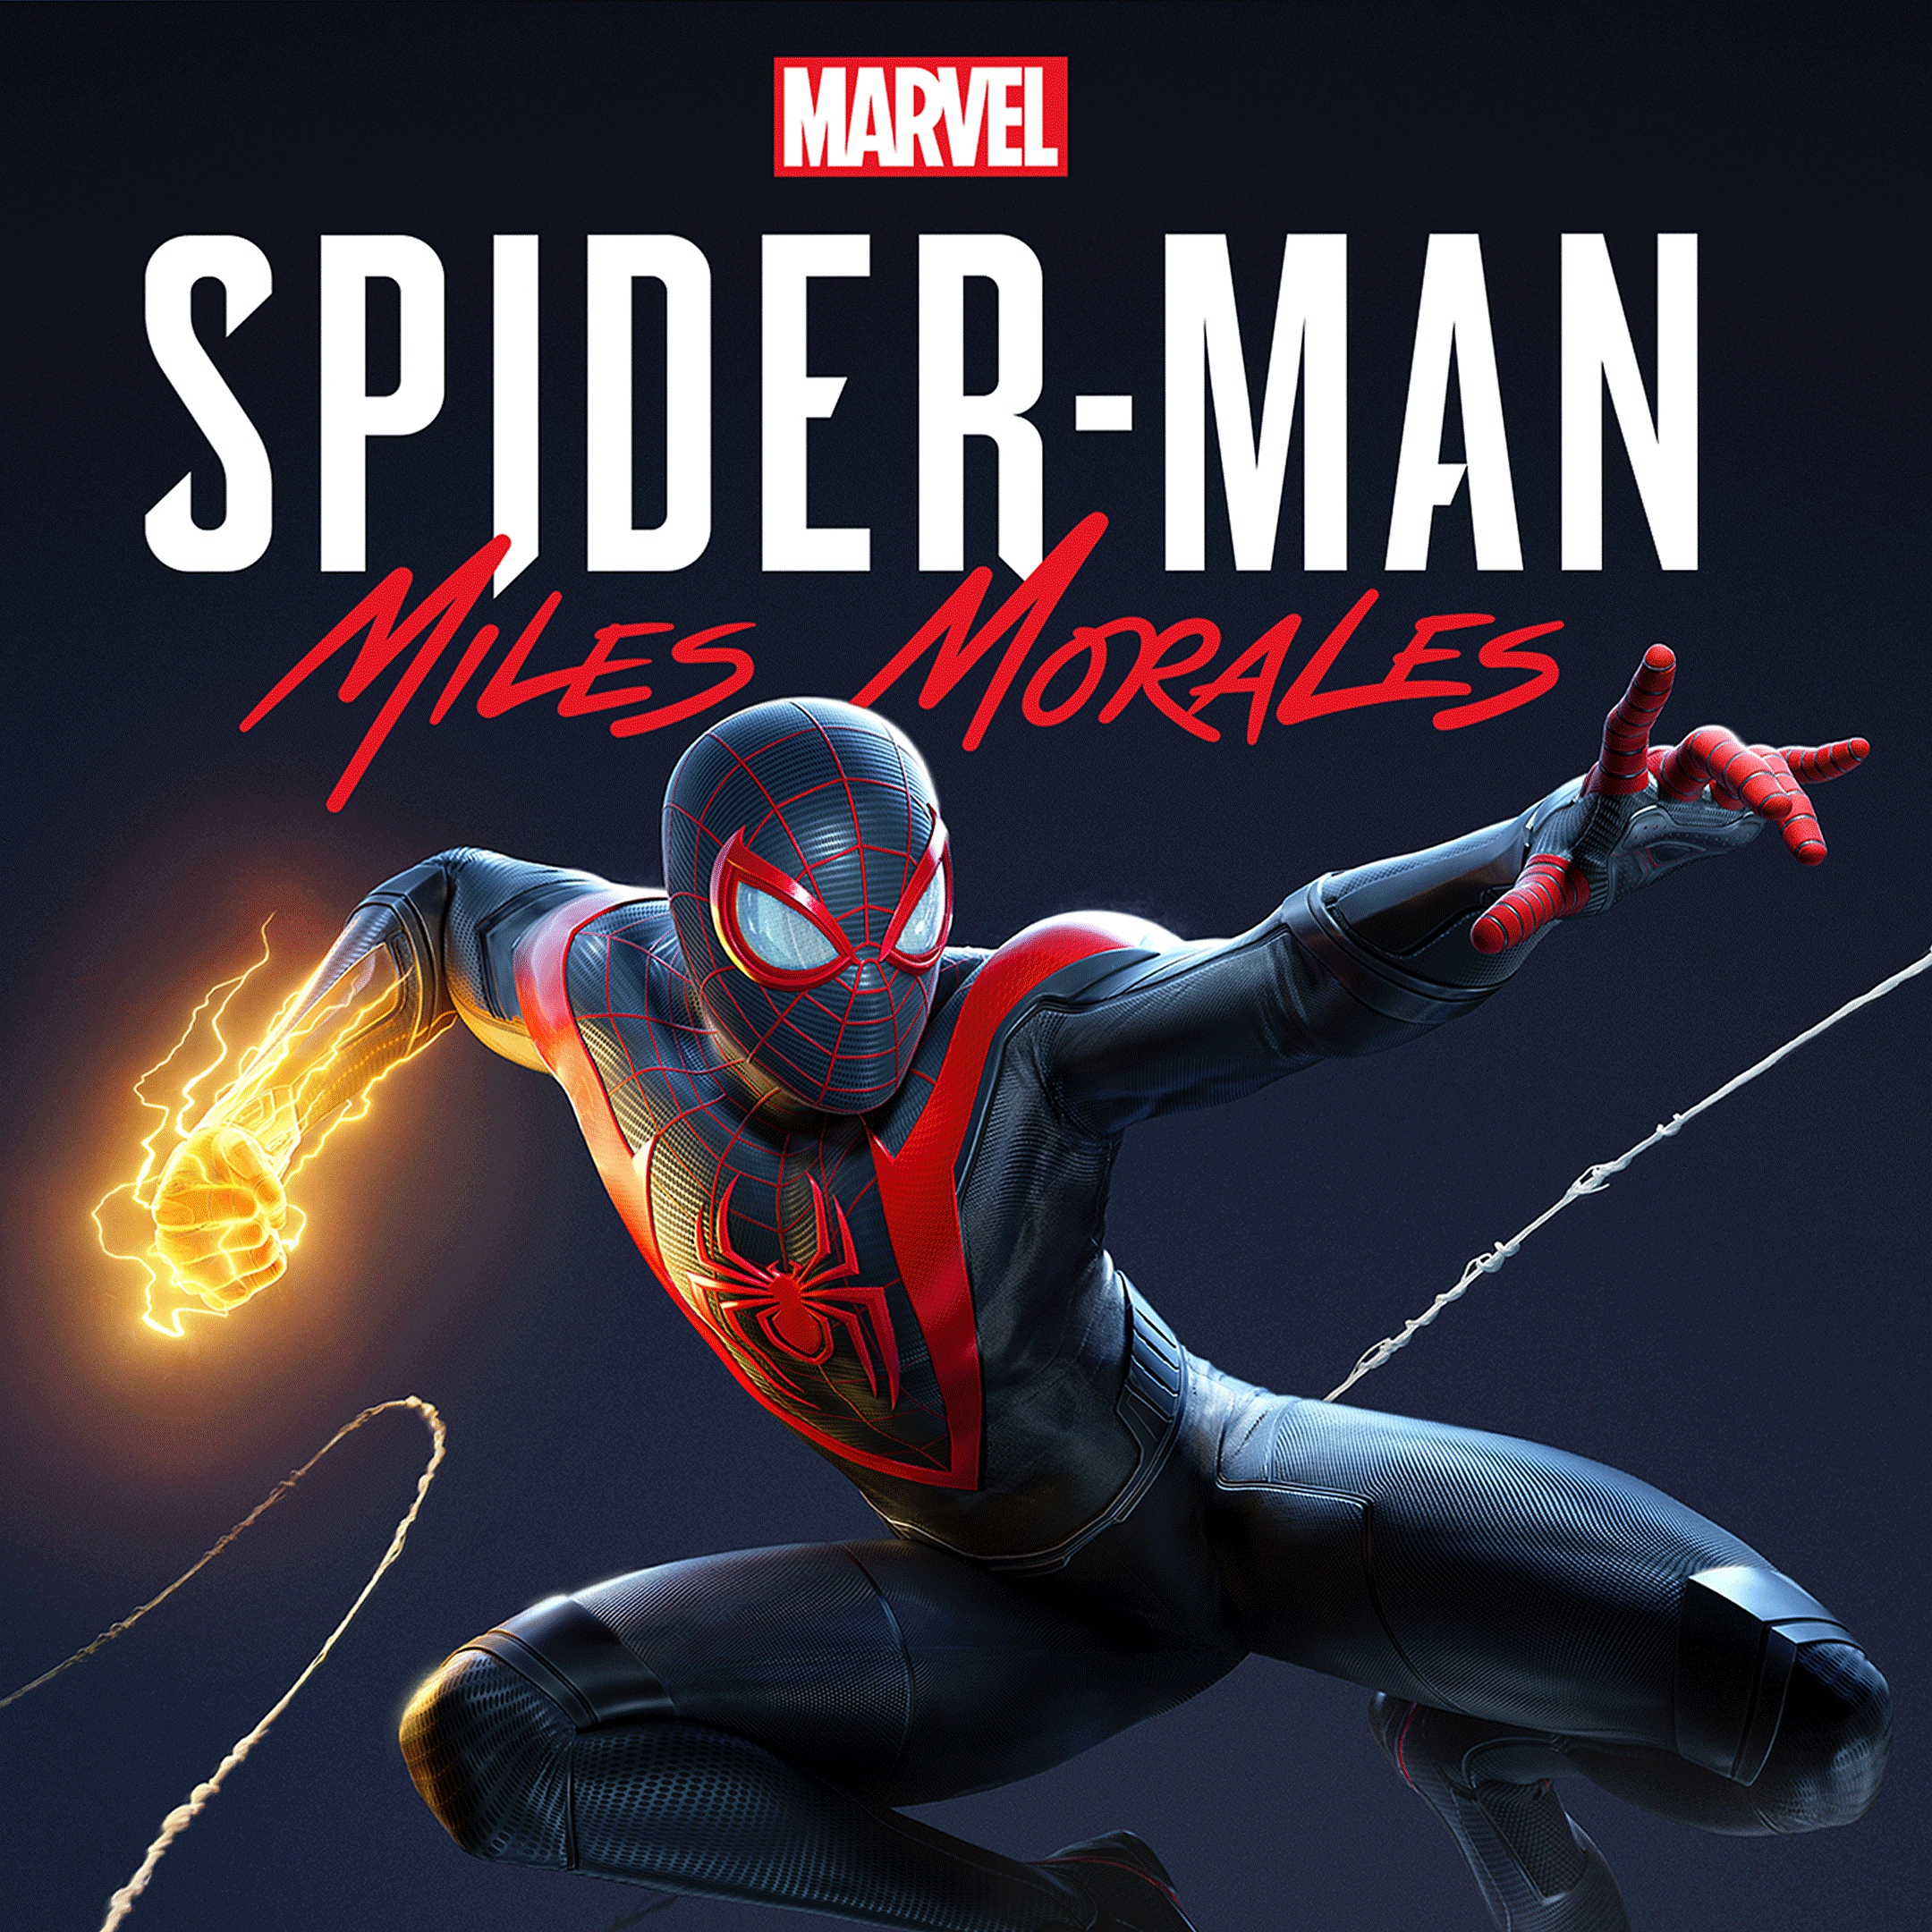 Semana do Consumidor PlayStation Marvels Spider Man Miles Morales PS4 PS5 Promocao Oferta